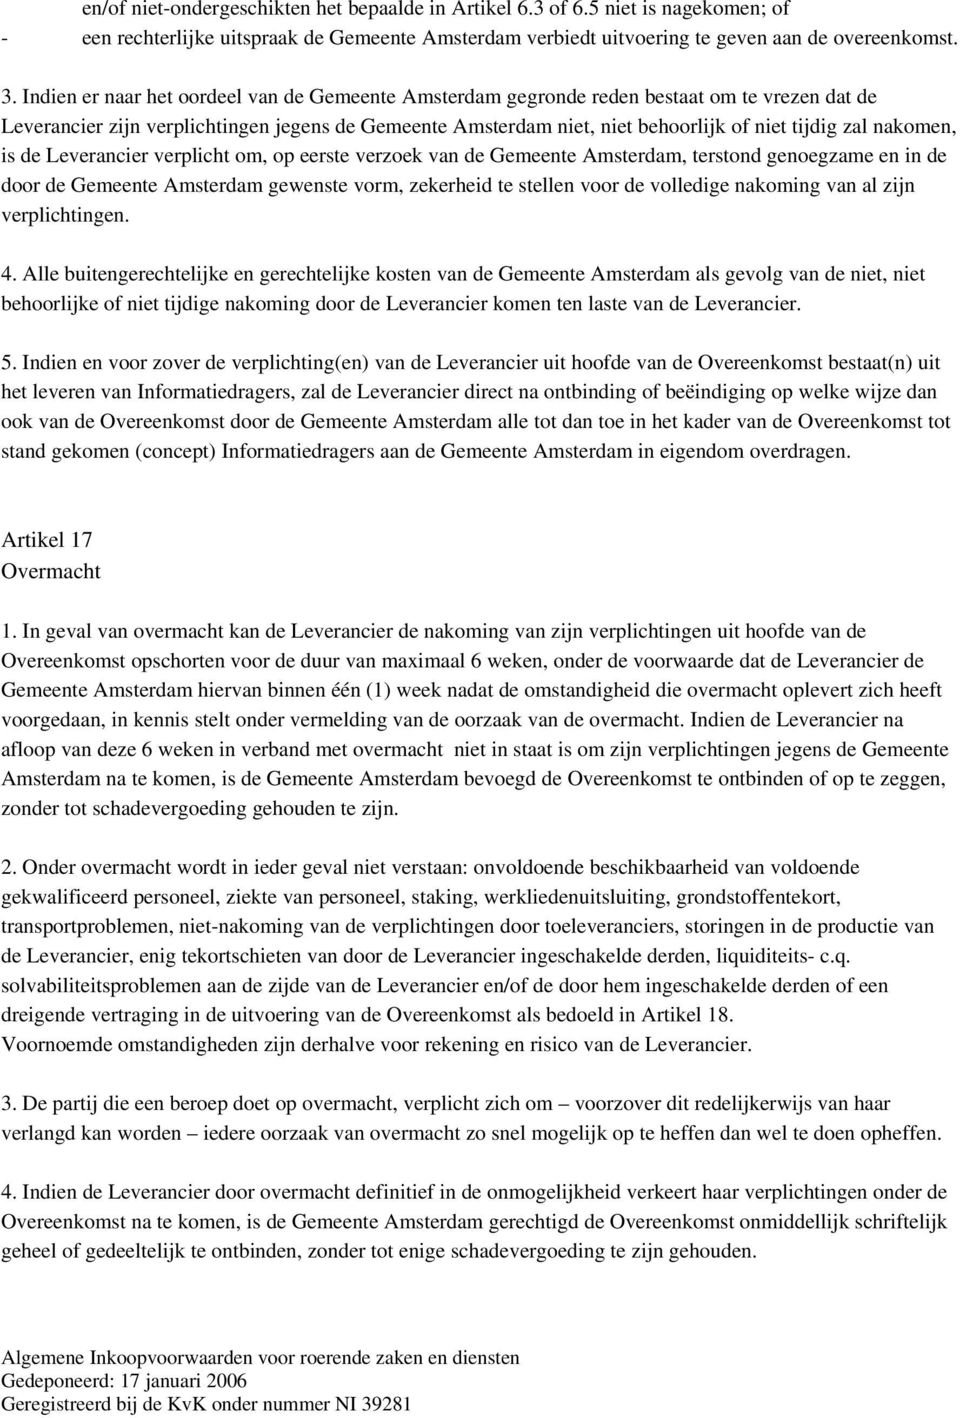 nakomen, is de Leverancier verplicht om, op eerste verzoek van de Gemeente Amsterdam, terstond genoegzame en in de door de Gemeente Amsterdam gewenste vorm, zekerheid te stellen voor de volledige